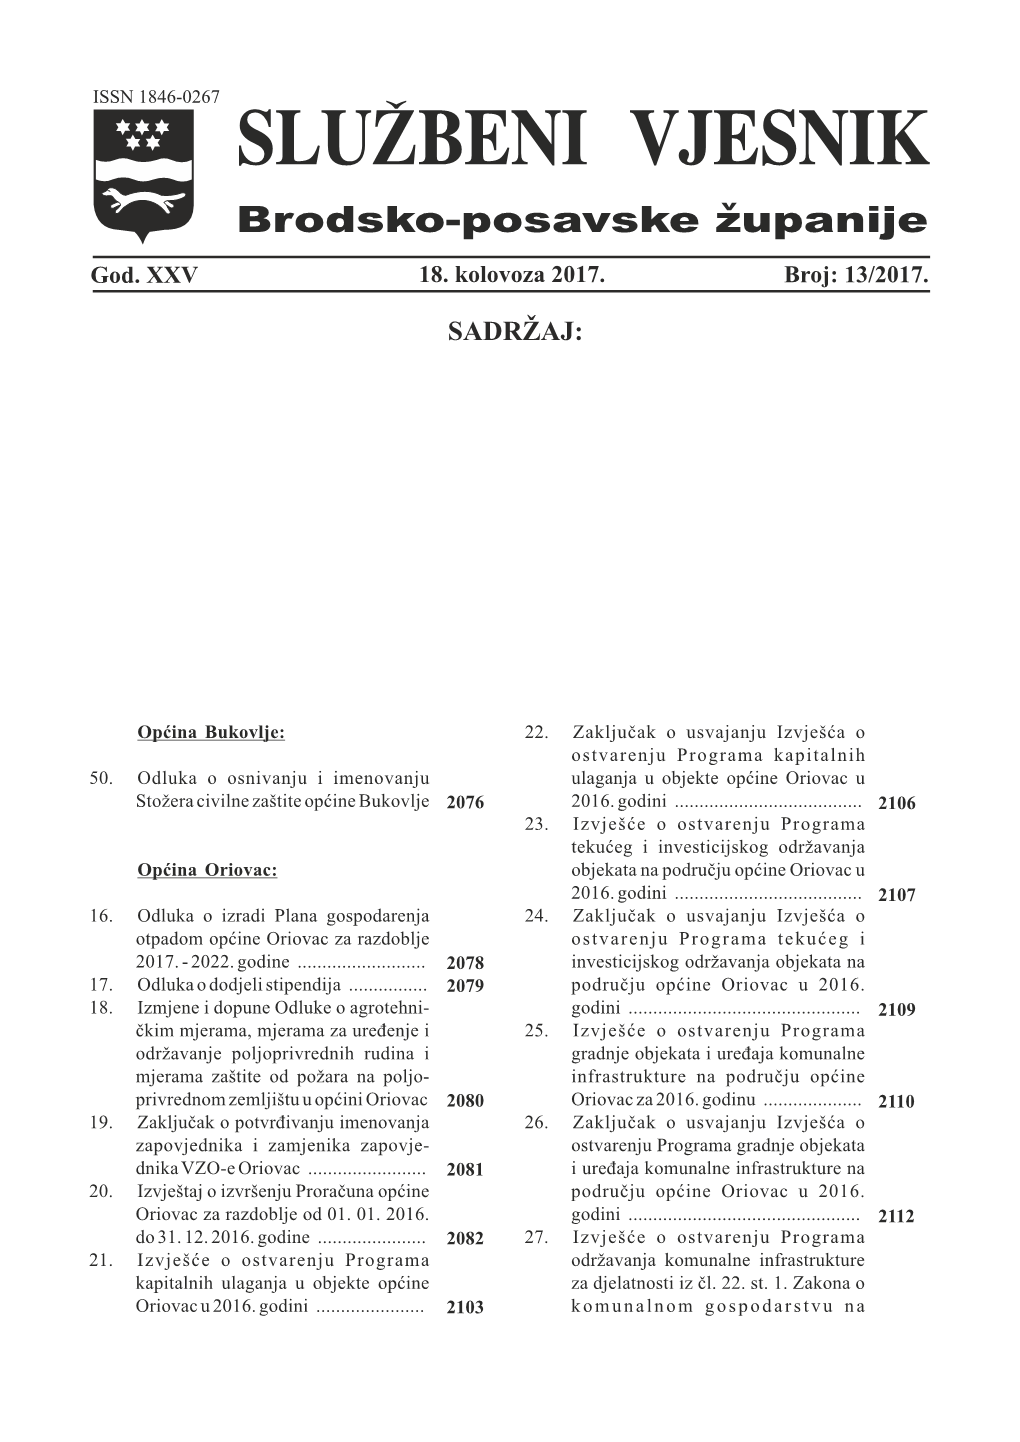 Općina Oriovac: Objekata Na Području Općine Oriovac U 2016